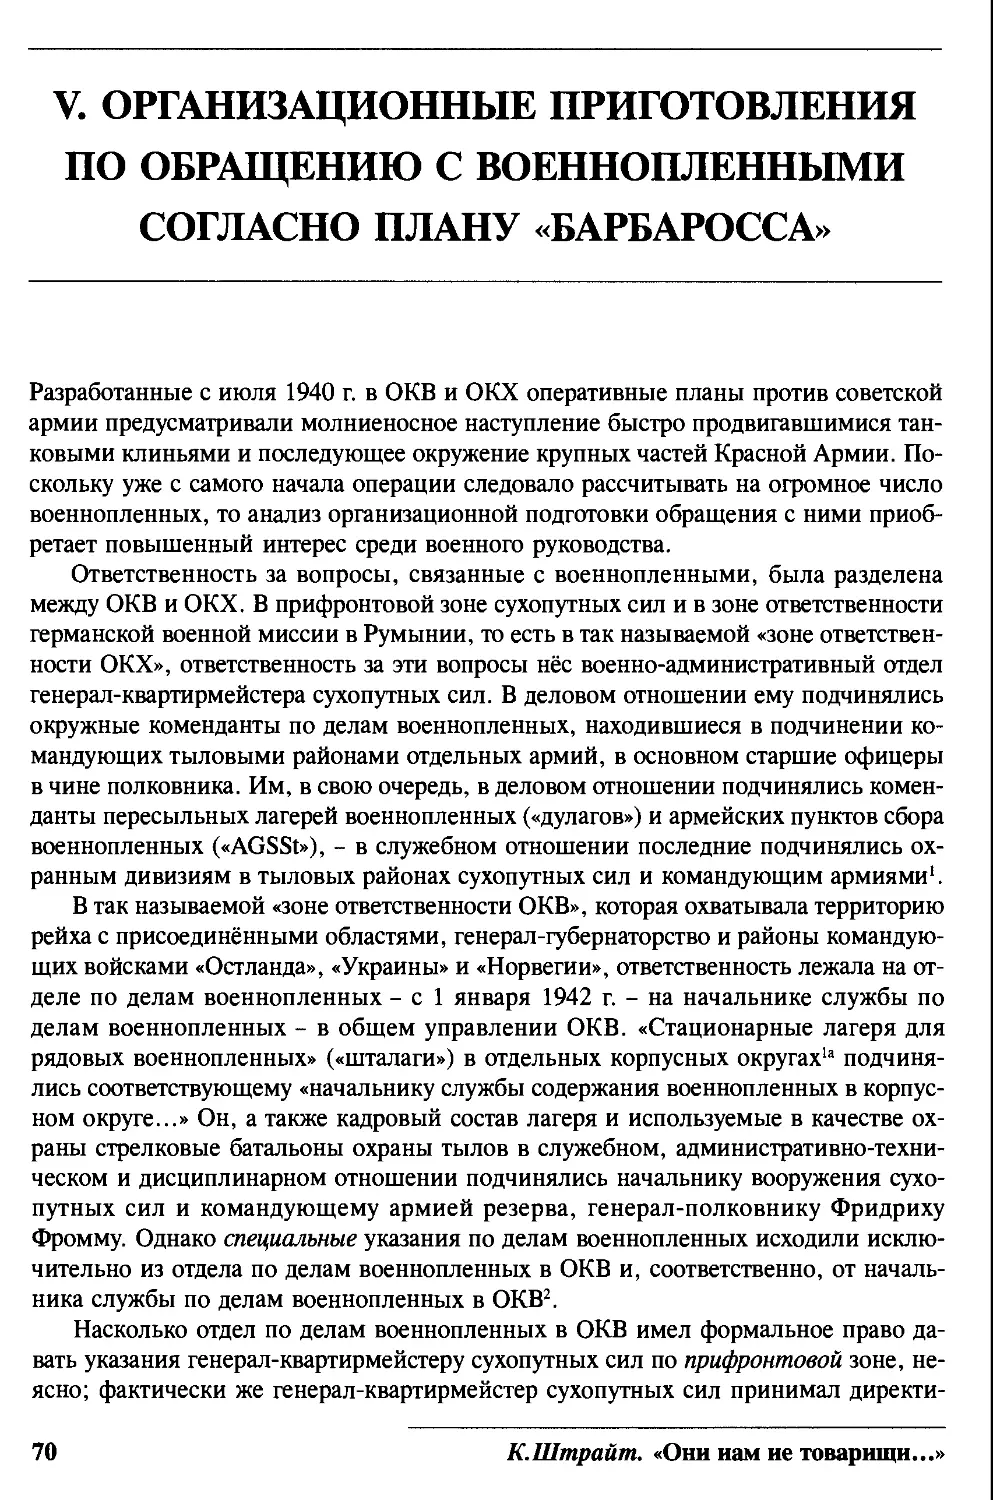 V. Организационные приготовления по обращению с военнопленными согласно плану «Барбаросса»